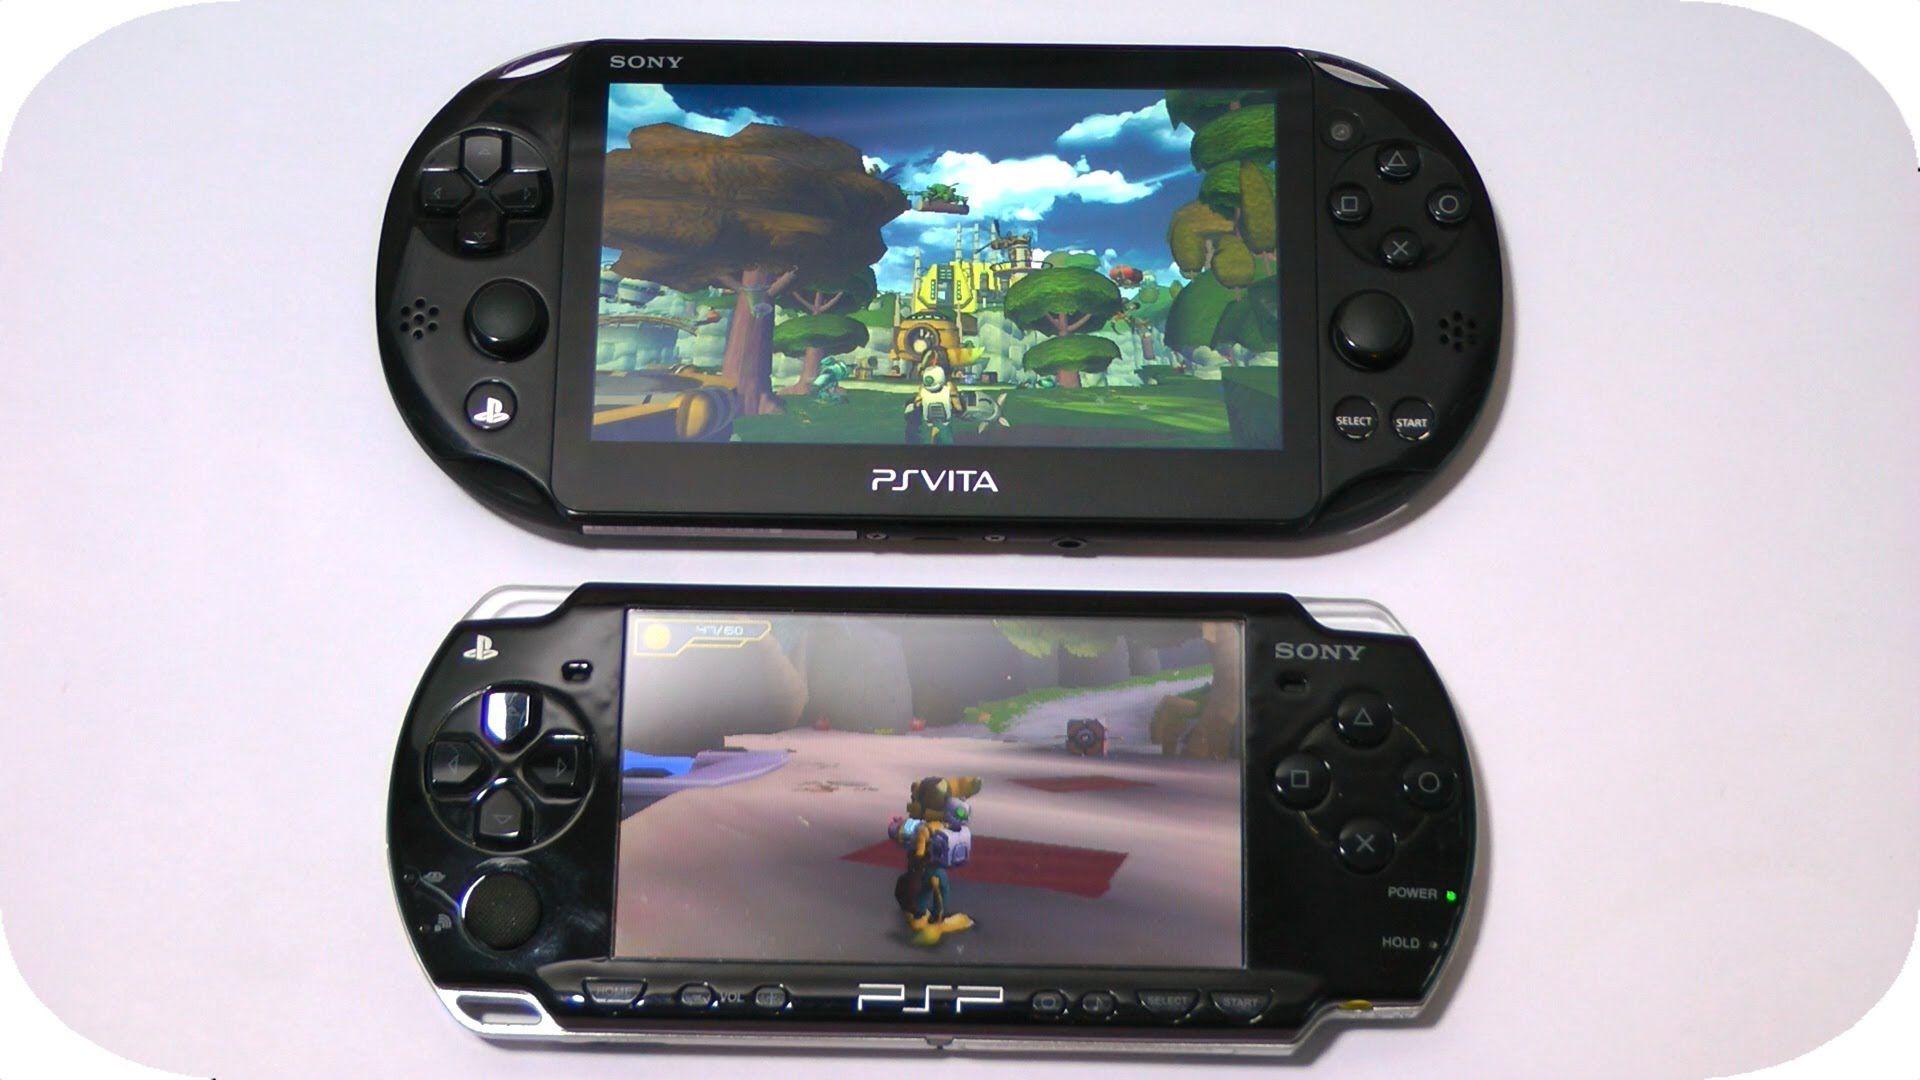 Psp vk. PSP PS Vita. PS Vita vs PSP. PSP Vita 1.